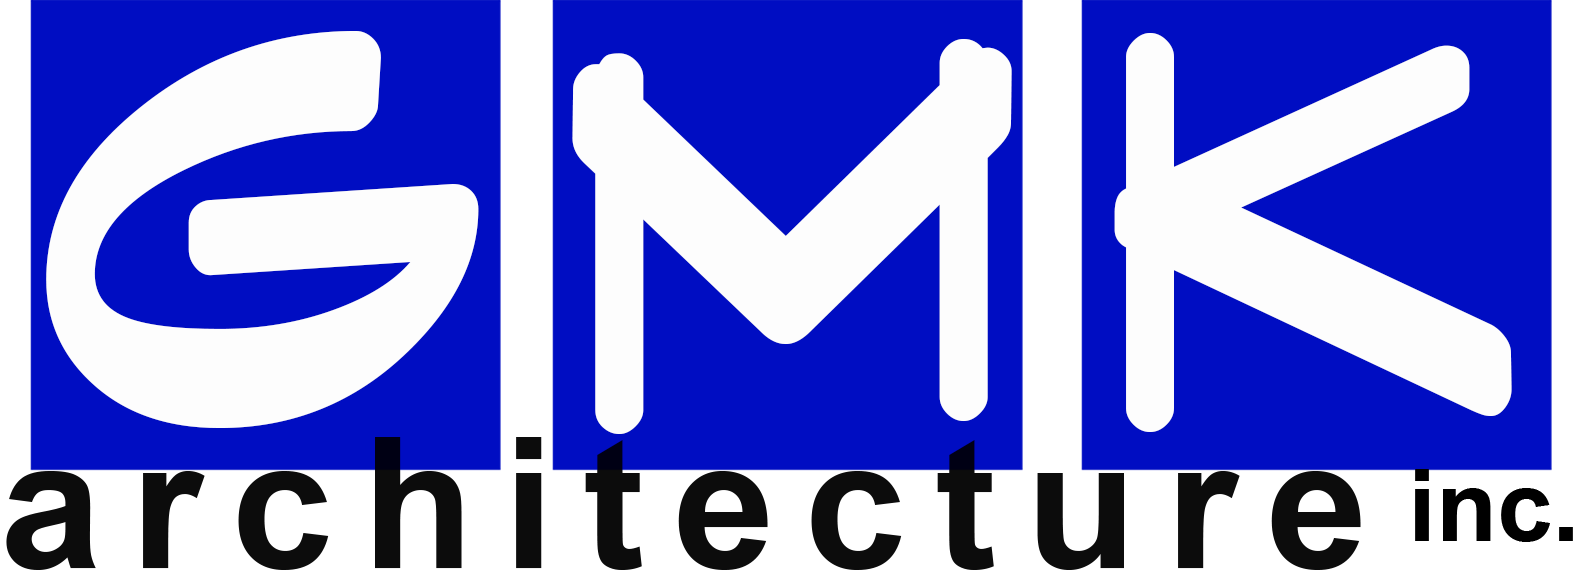 GMK Architecture Inc logo